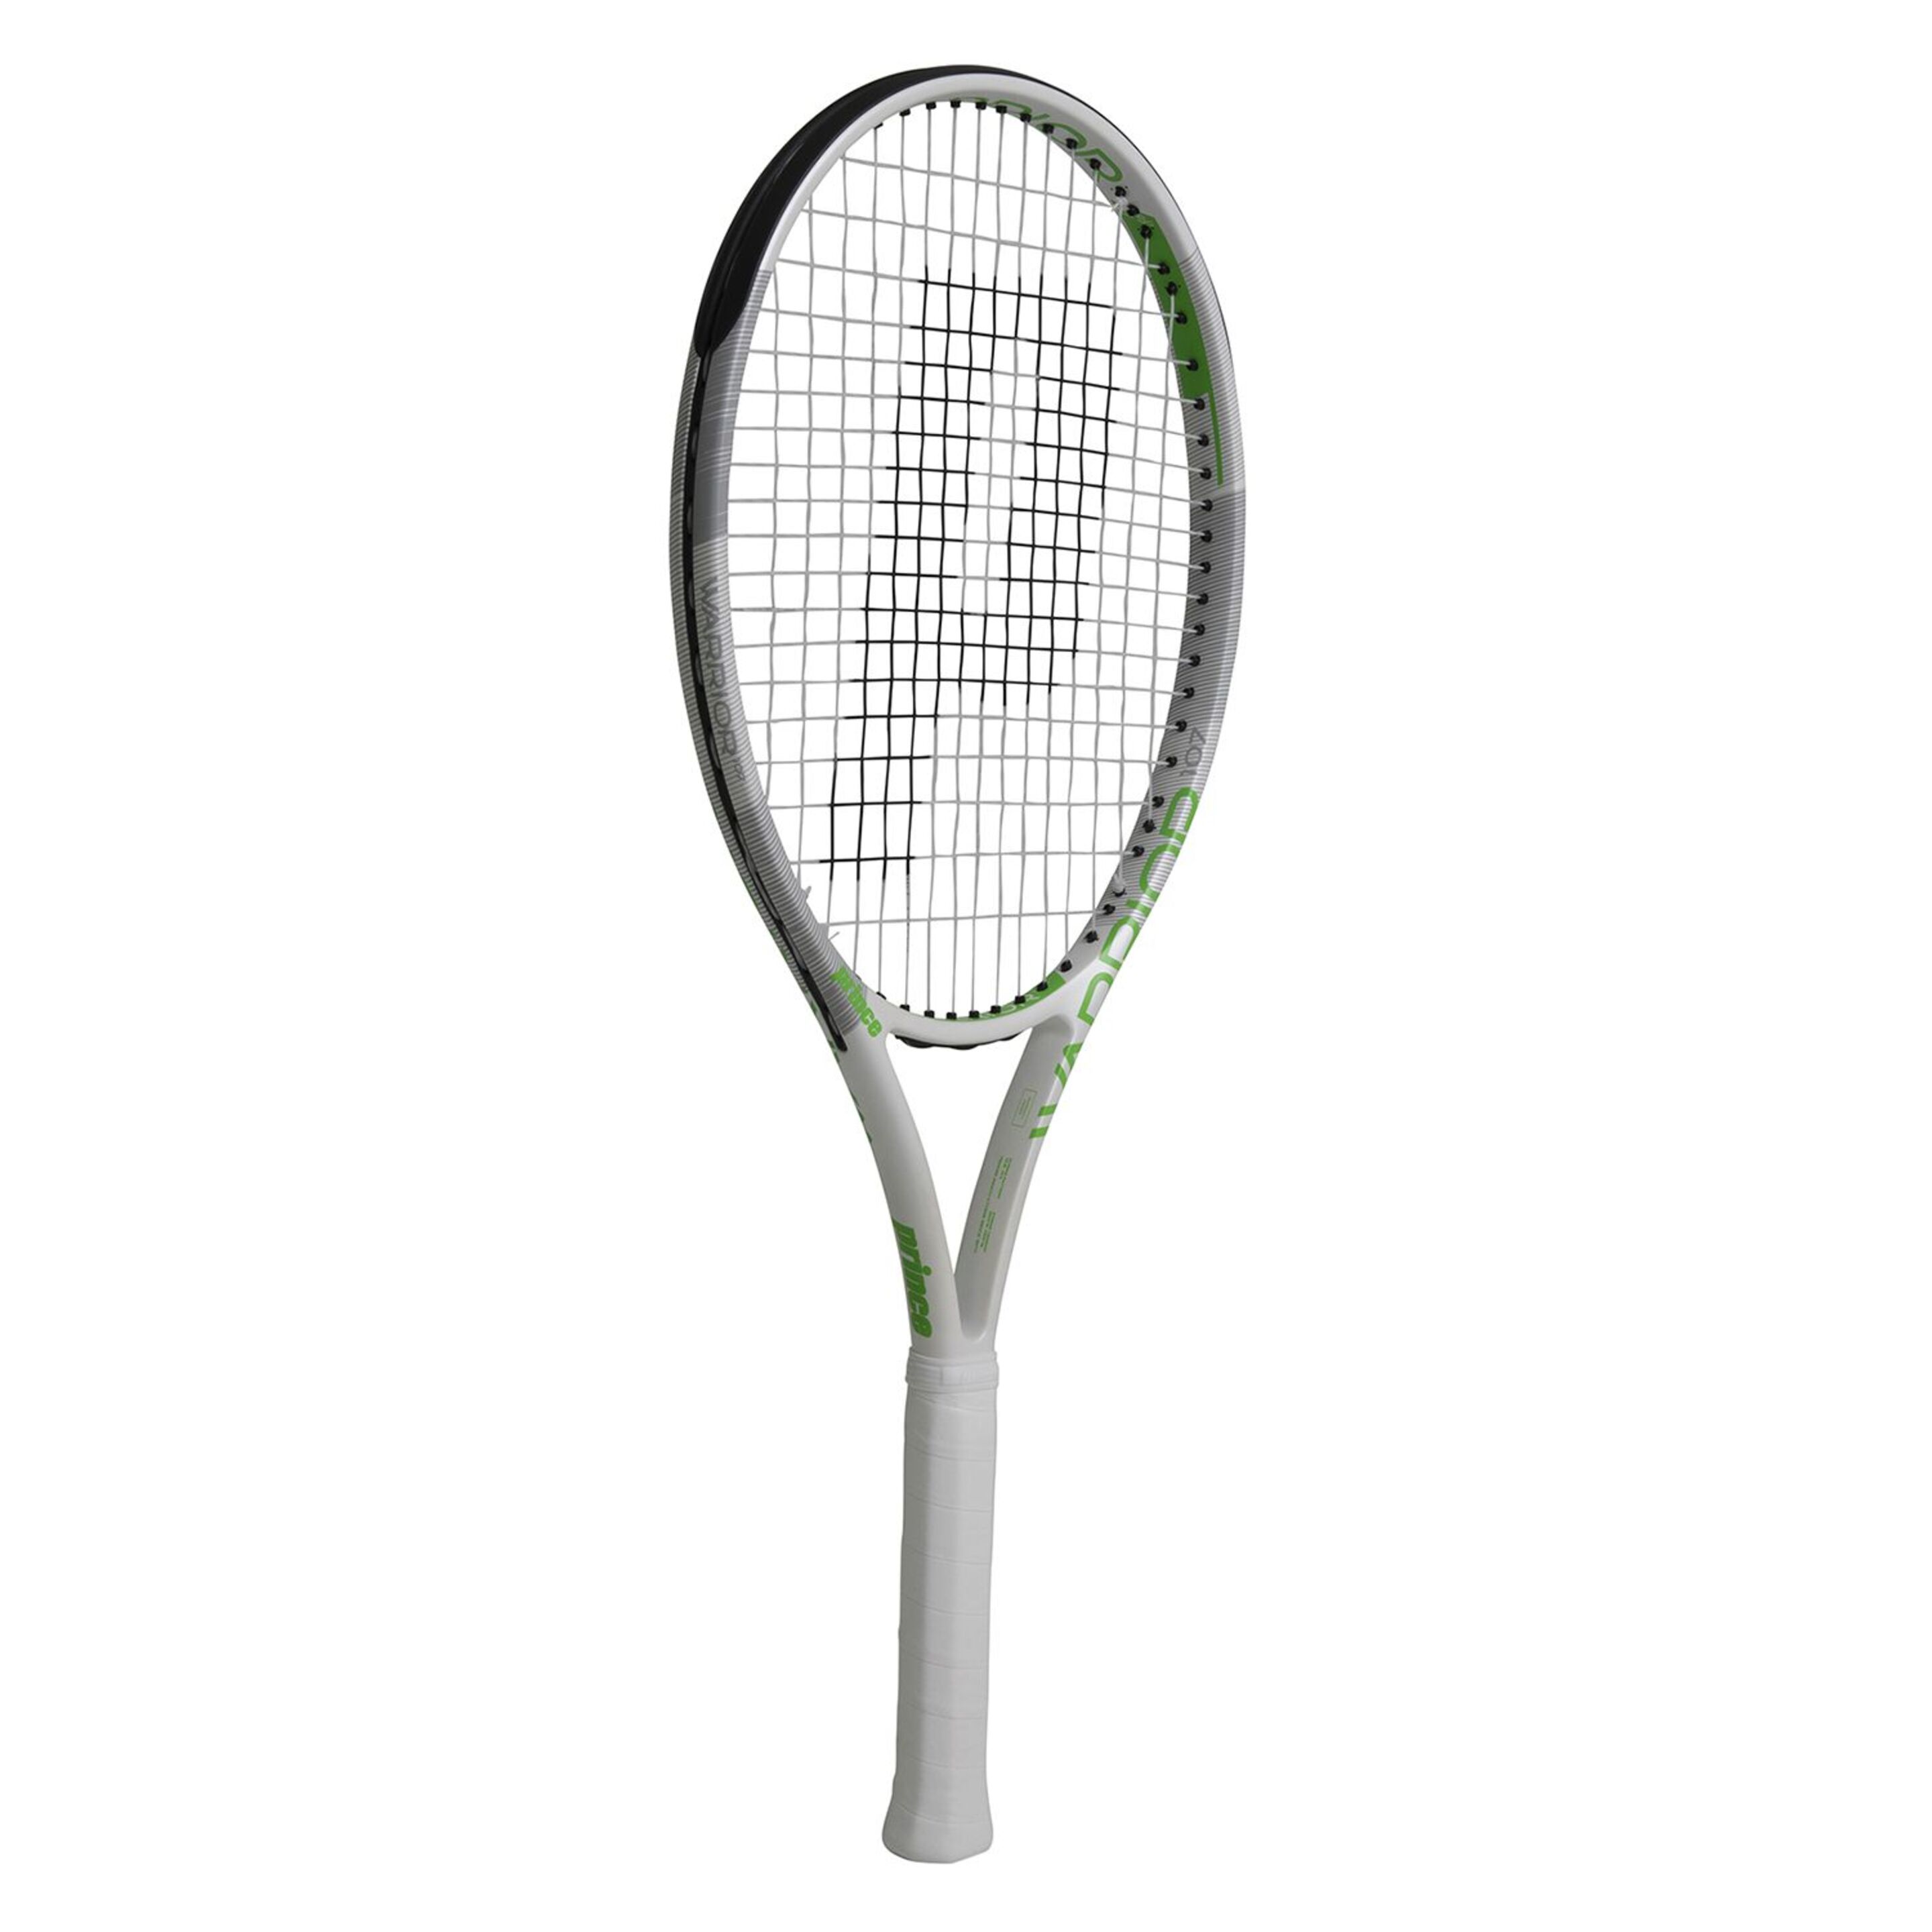 Raqueta De Tenis Prince Warrior 107 275 G (encordada Y Con Funda) - negro-gris - 